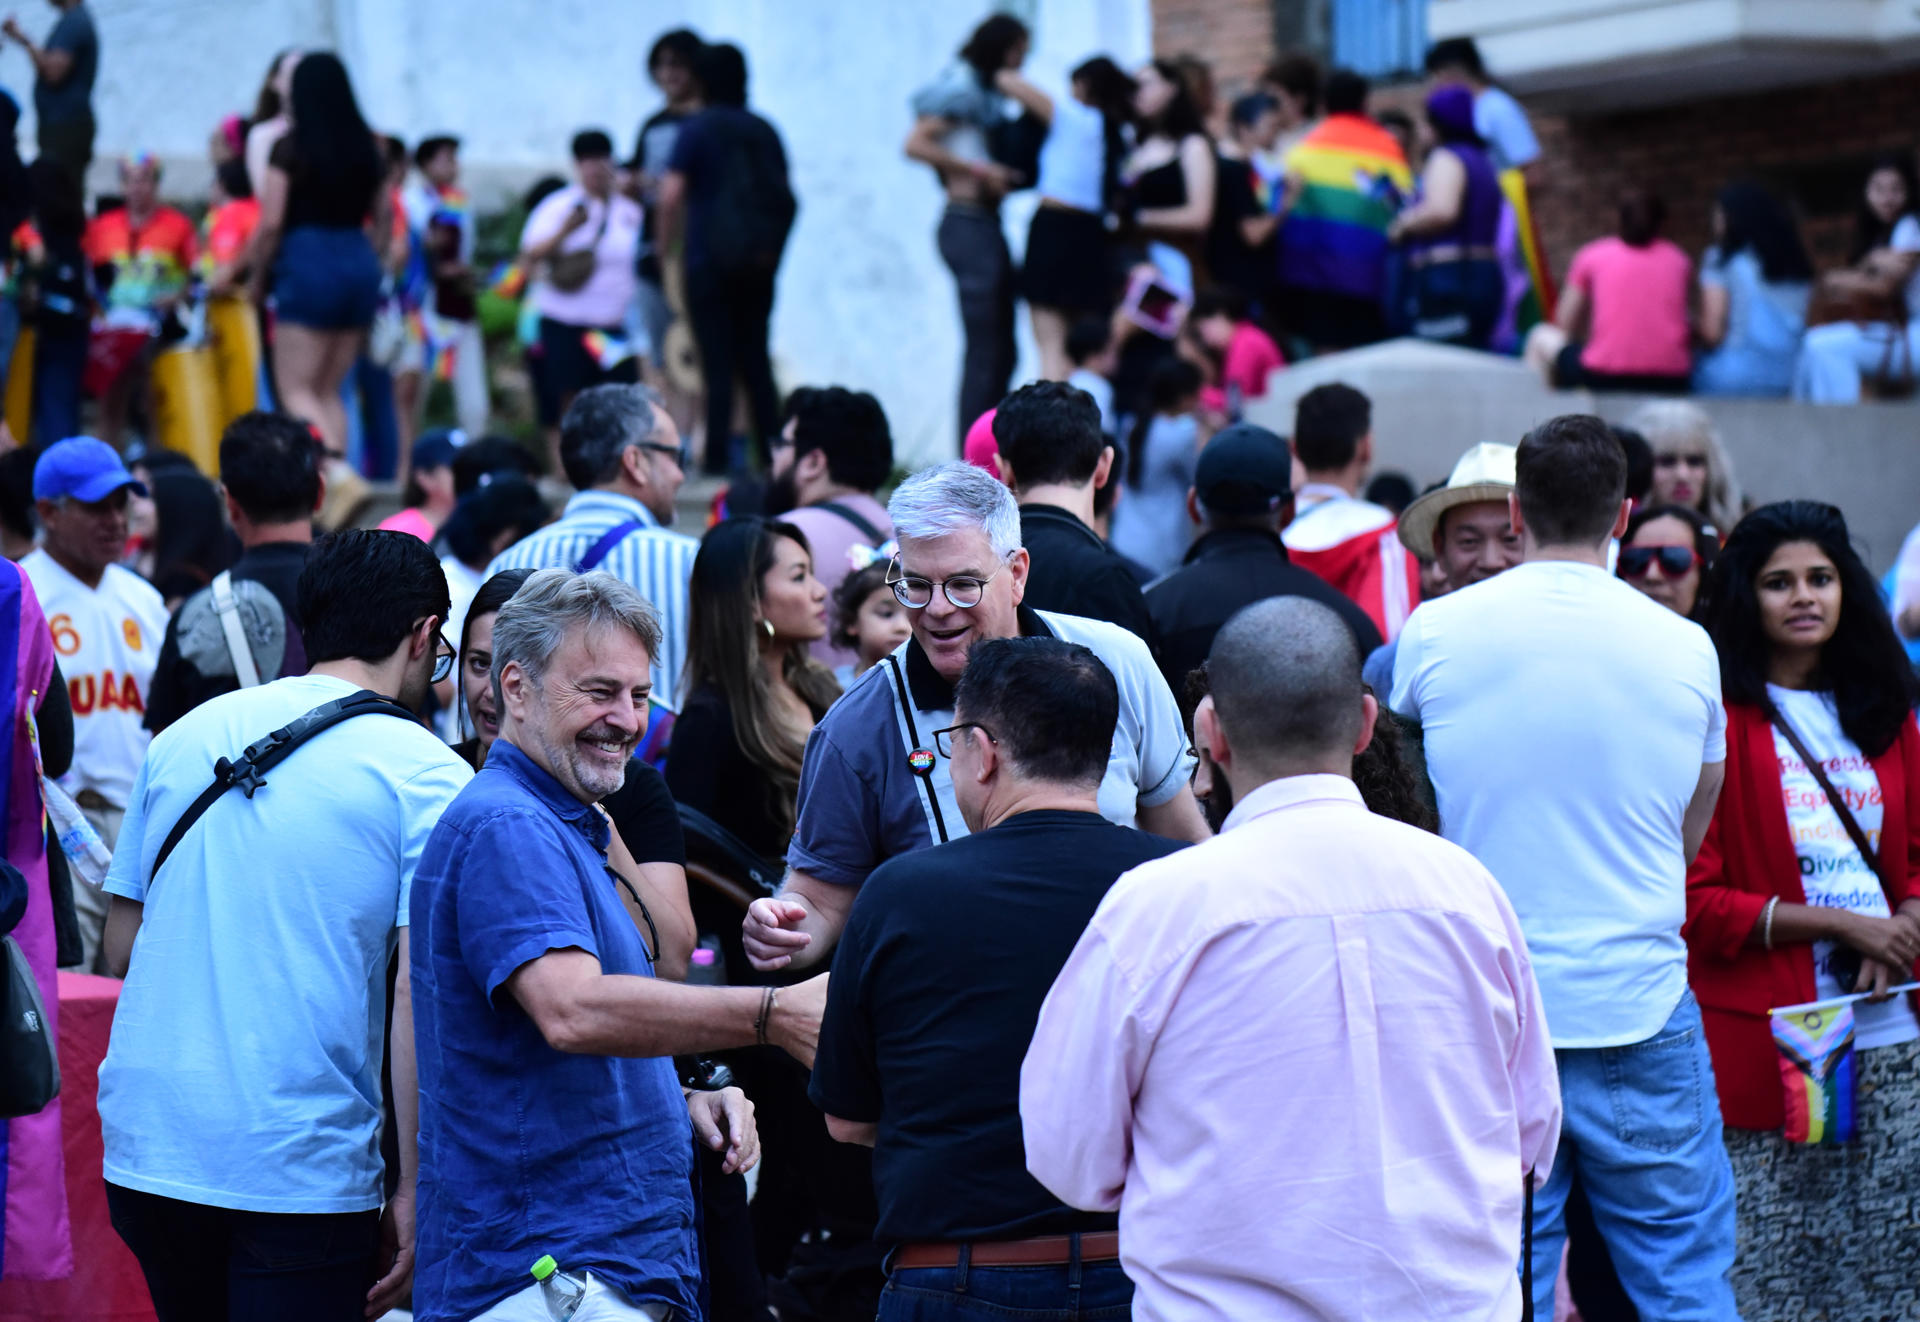 Centenares de personas reclamaron respeto a los derechos de la comunidad LGBTI (trans, lesbianas, gais, bisexuales e intersexuales) con una colorida marcha que este año arribó a su vigésimo aniversario, hoy en Asunción (Paraguay). EFE/ César Sánchez